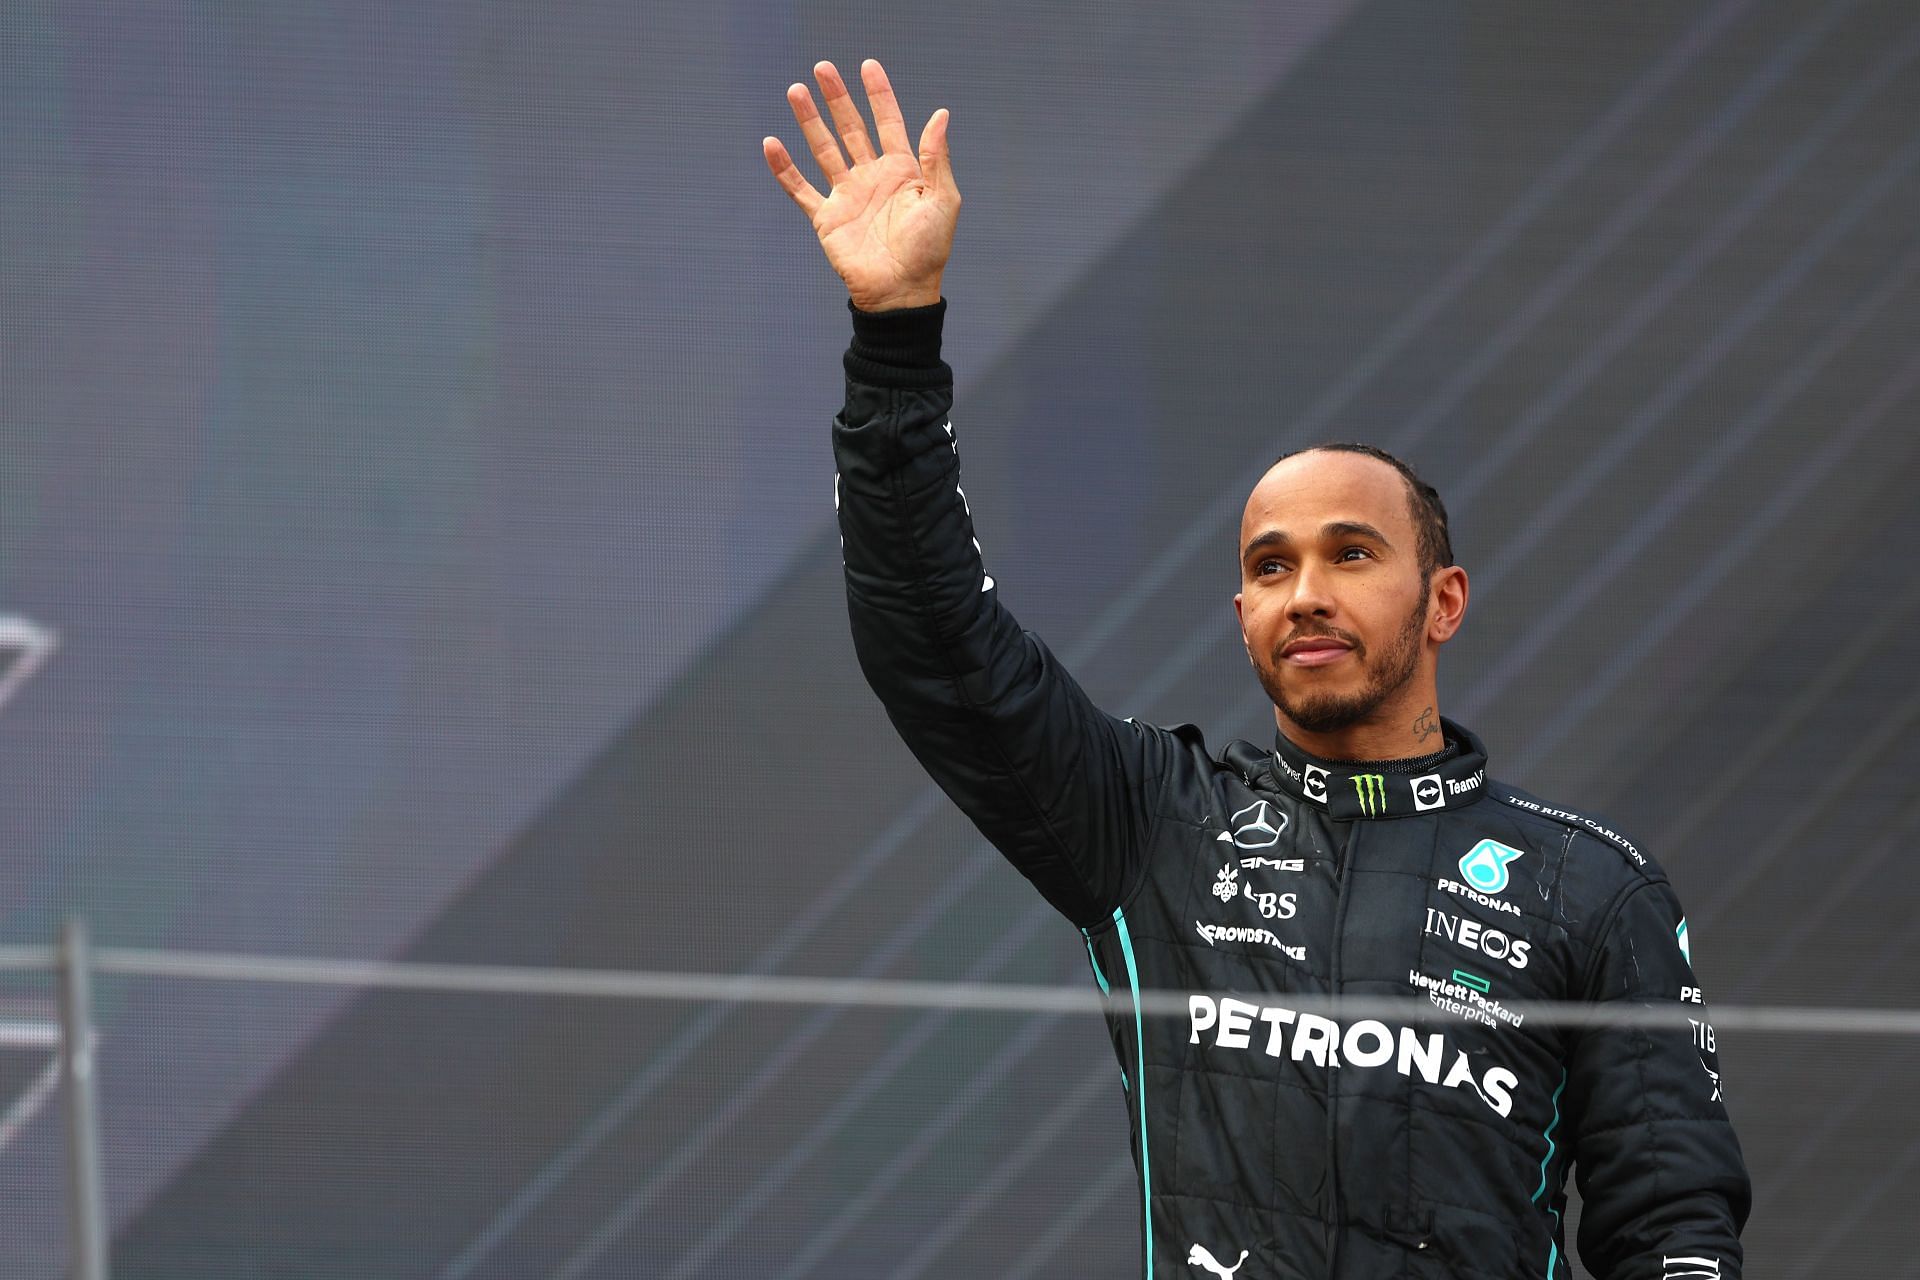 F1 Grand Prix of Austria - Lewis Hamilton celebrates in Austria.